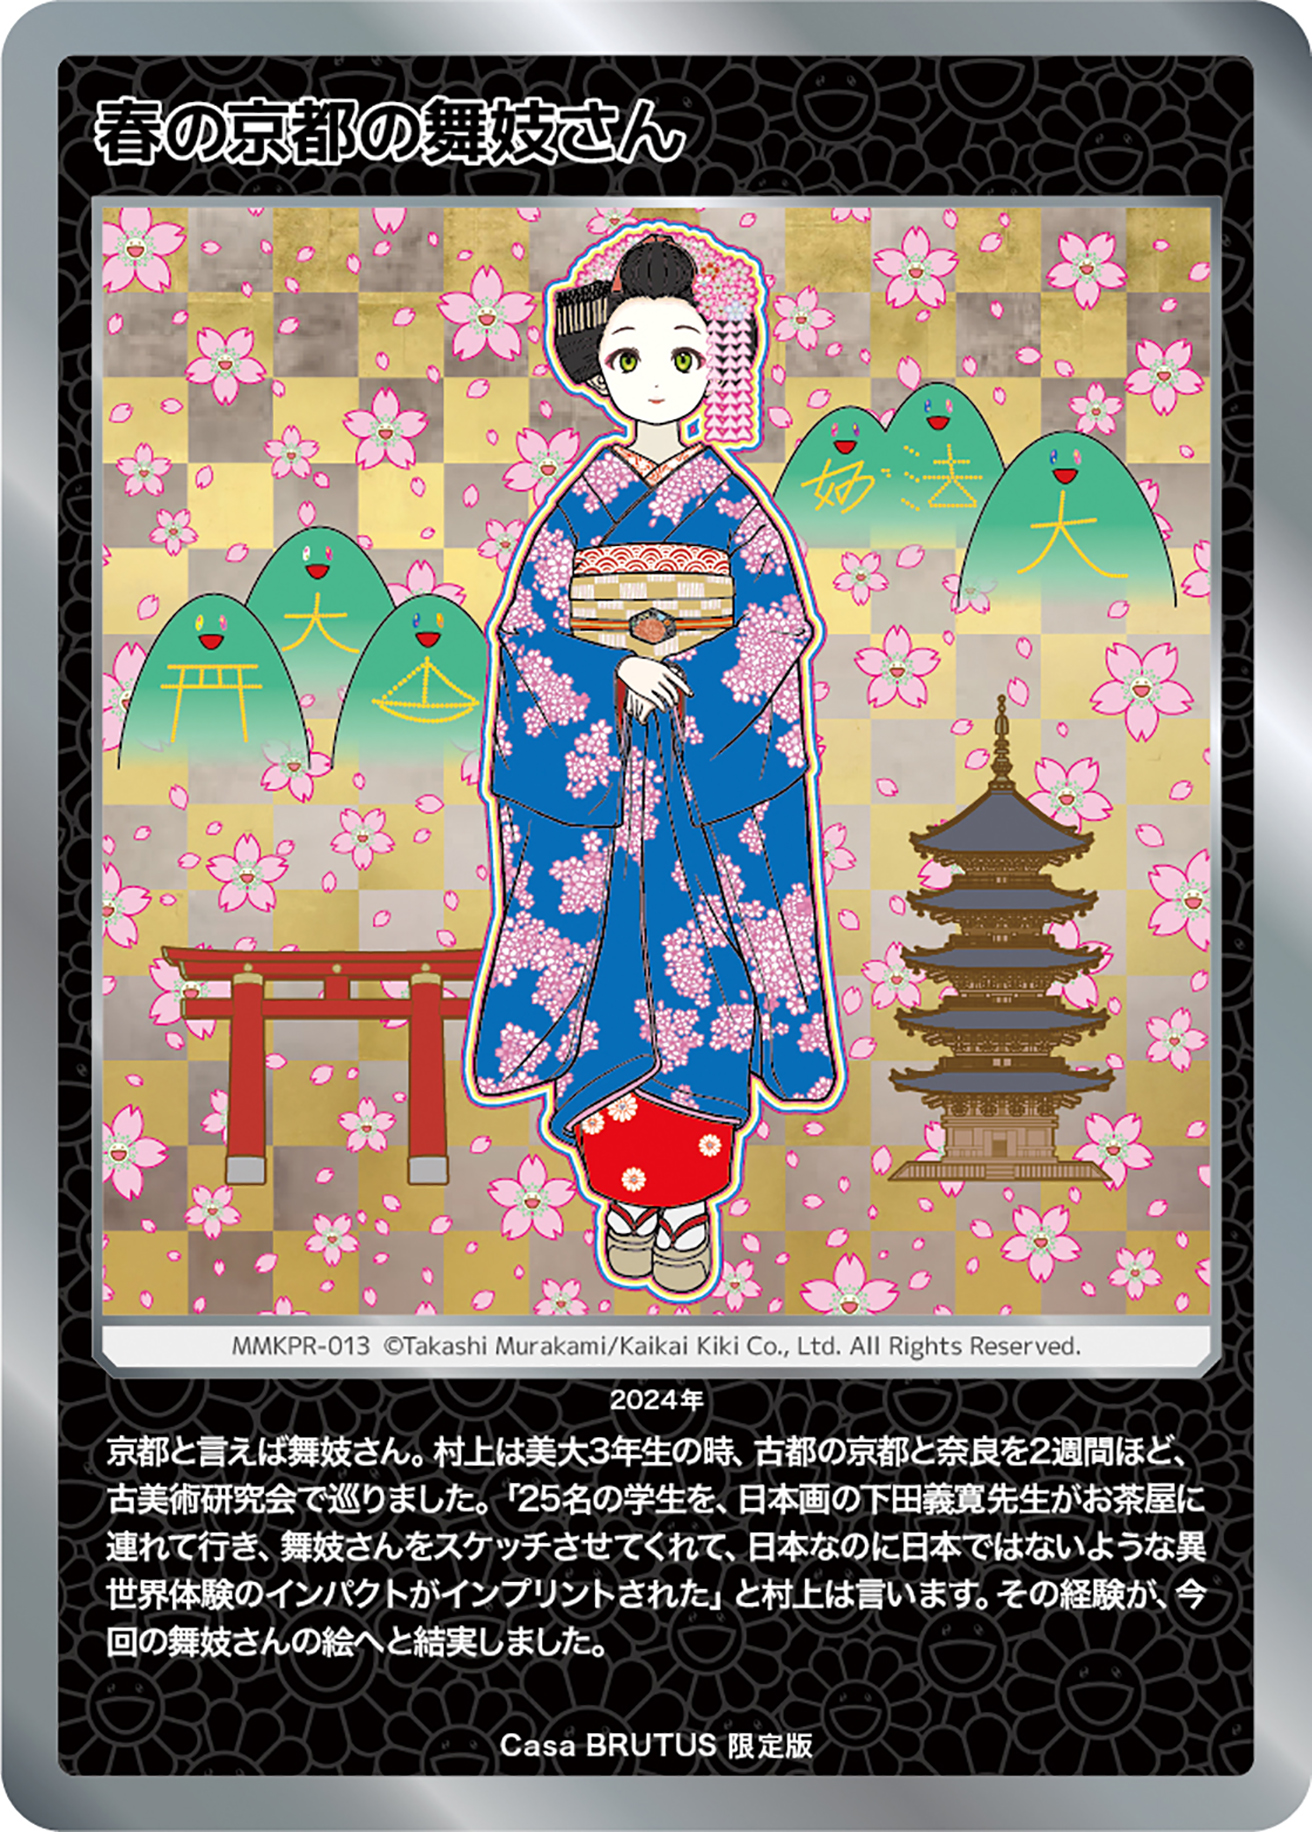 村上隆もののけ京都」トレカ、Casa BRUTUS 限定版「春の京都の舞妓さん 